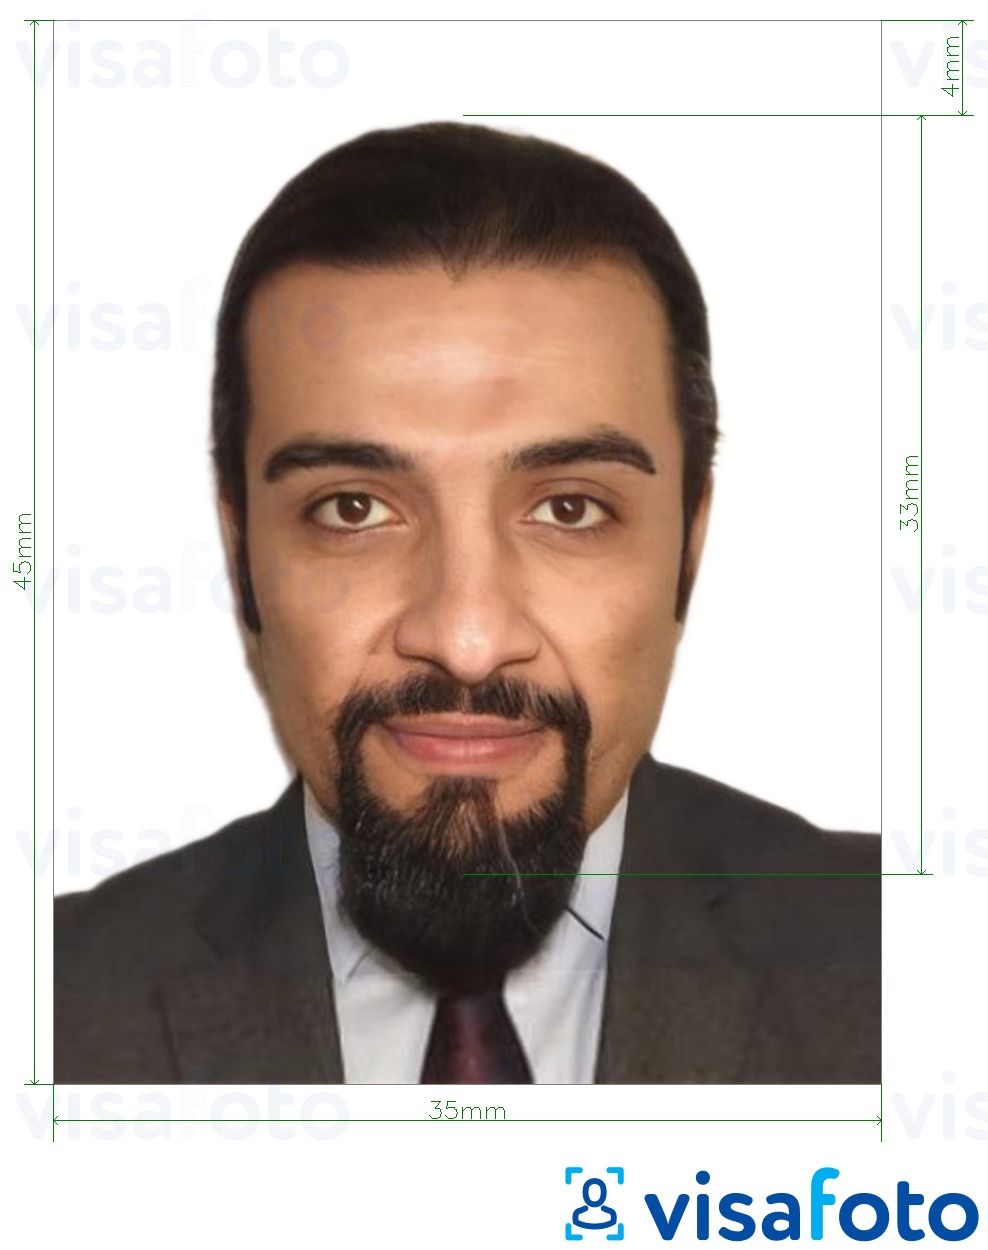 Esempio di foto per Carta d'identità in Tunisia 3,5x4,5 cm (35x45 mm) con specifiche delle dimensioni esatte